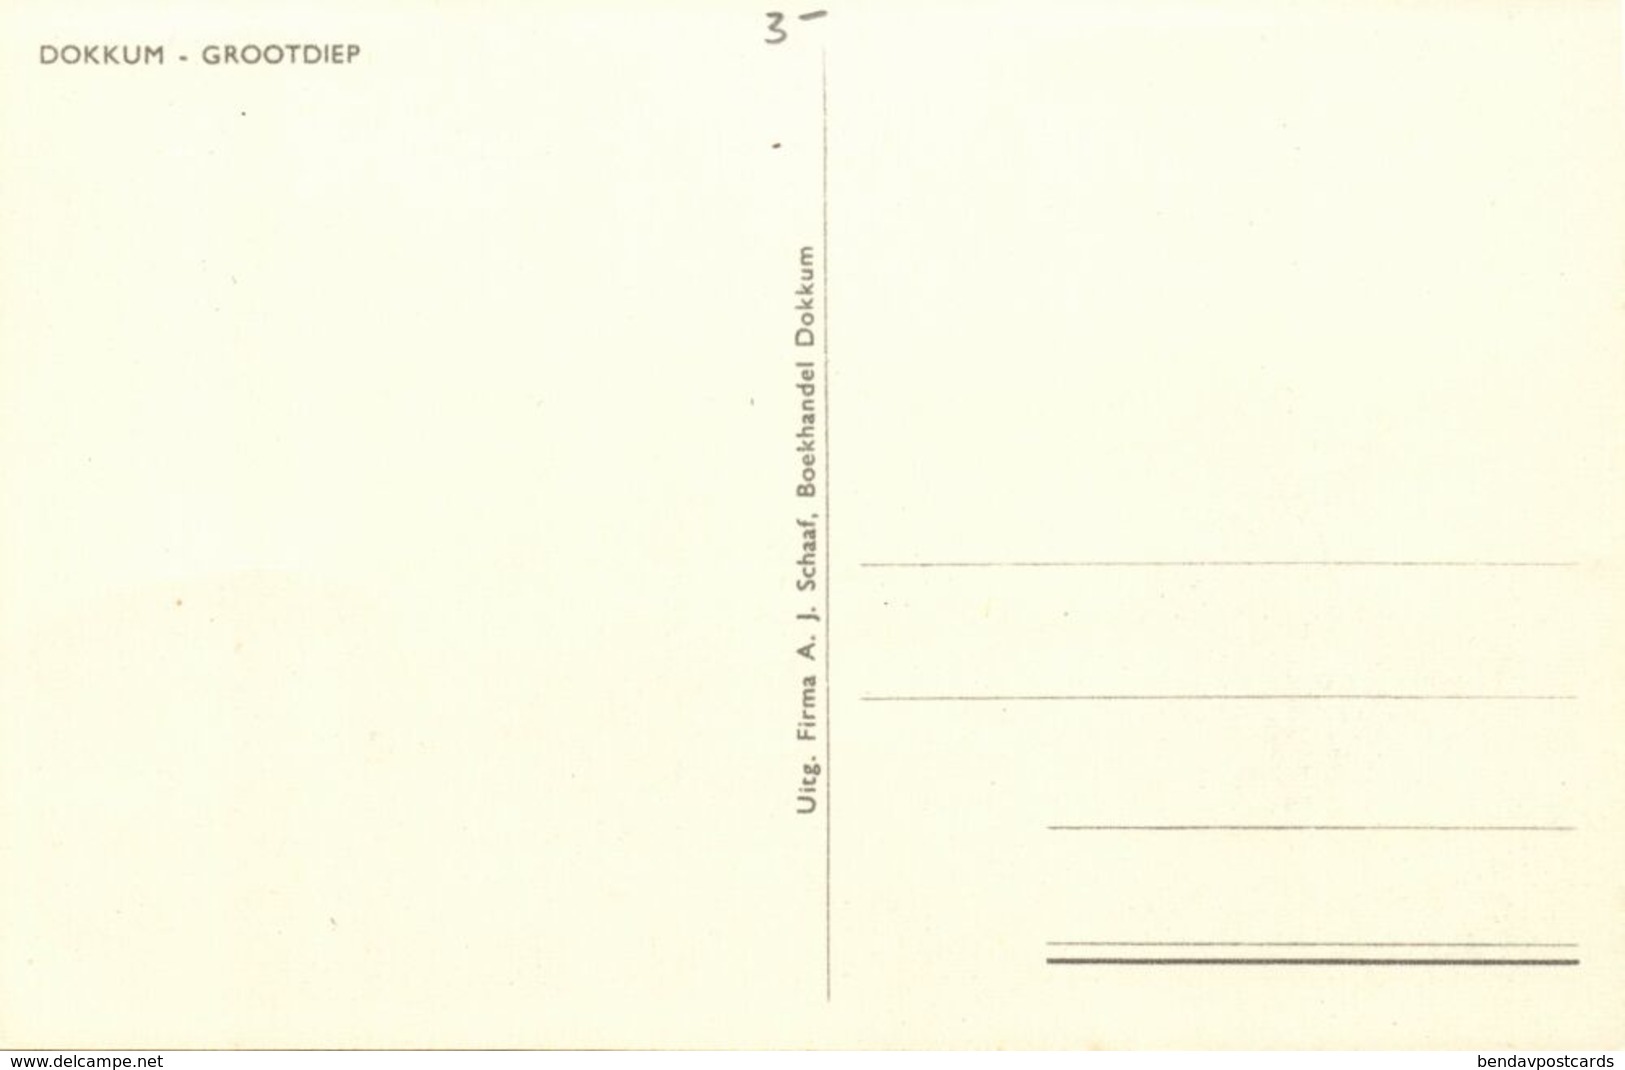 Nederland, DOKKUM, Grootdiep (1960s) Ansichtkaart - Dokkum